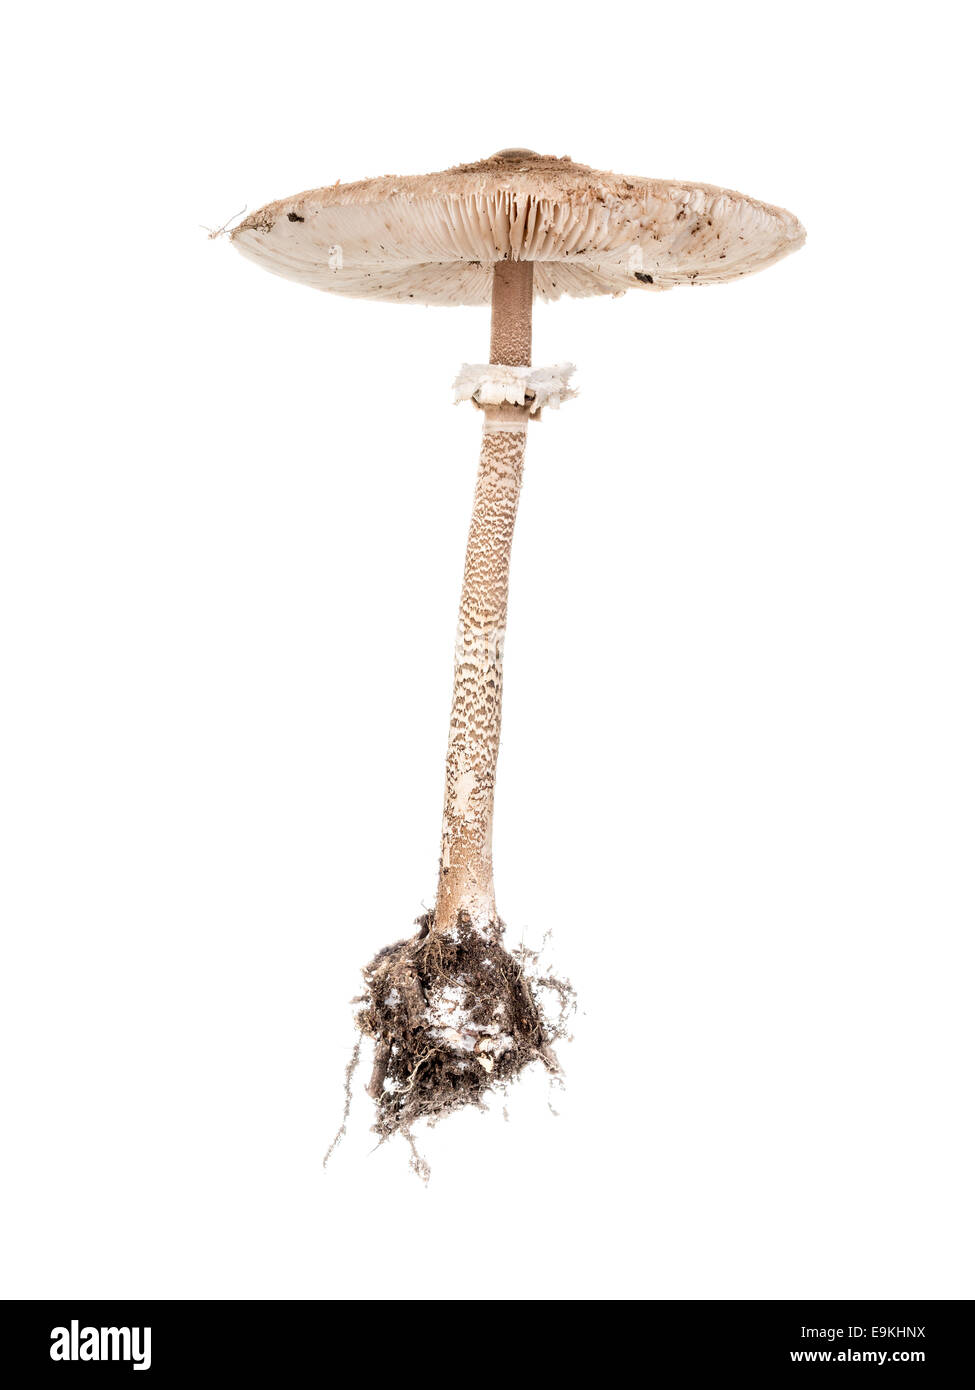 Ombrellone fungo fungo shot su sfondo bianco Foto Stock